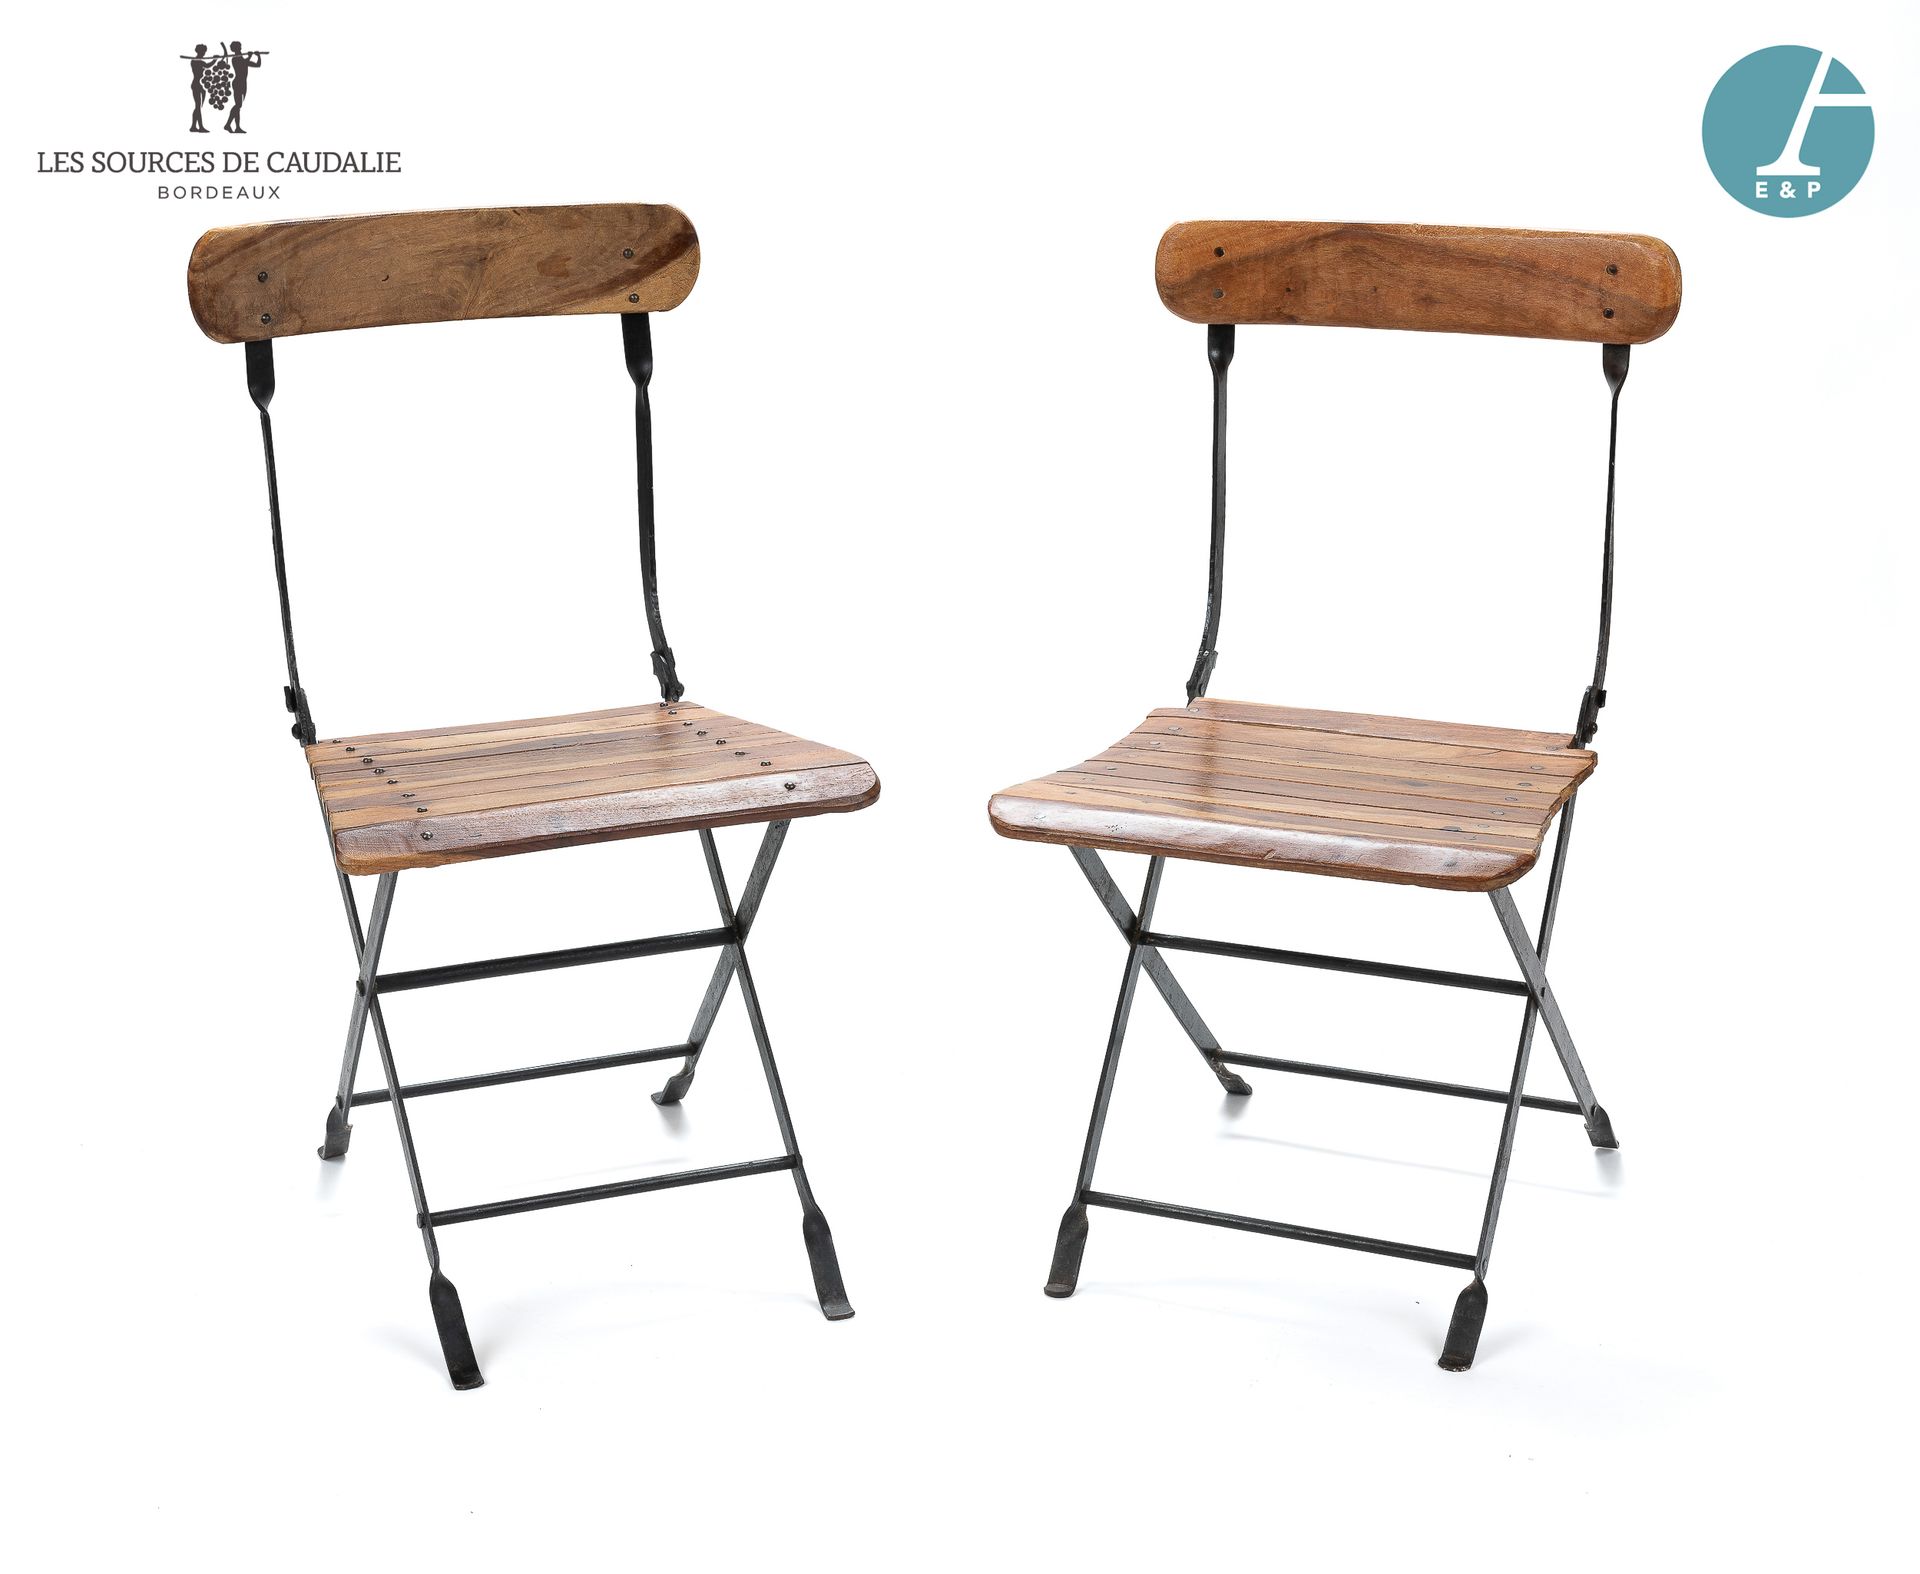 Null 从5号房间 "Le Tonnelier "开始。

一对锻铁和天然木制的折叠椅。

高：88厘米 - 宽：47.5厘米 - 深：50厘米